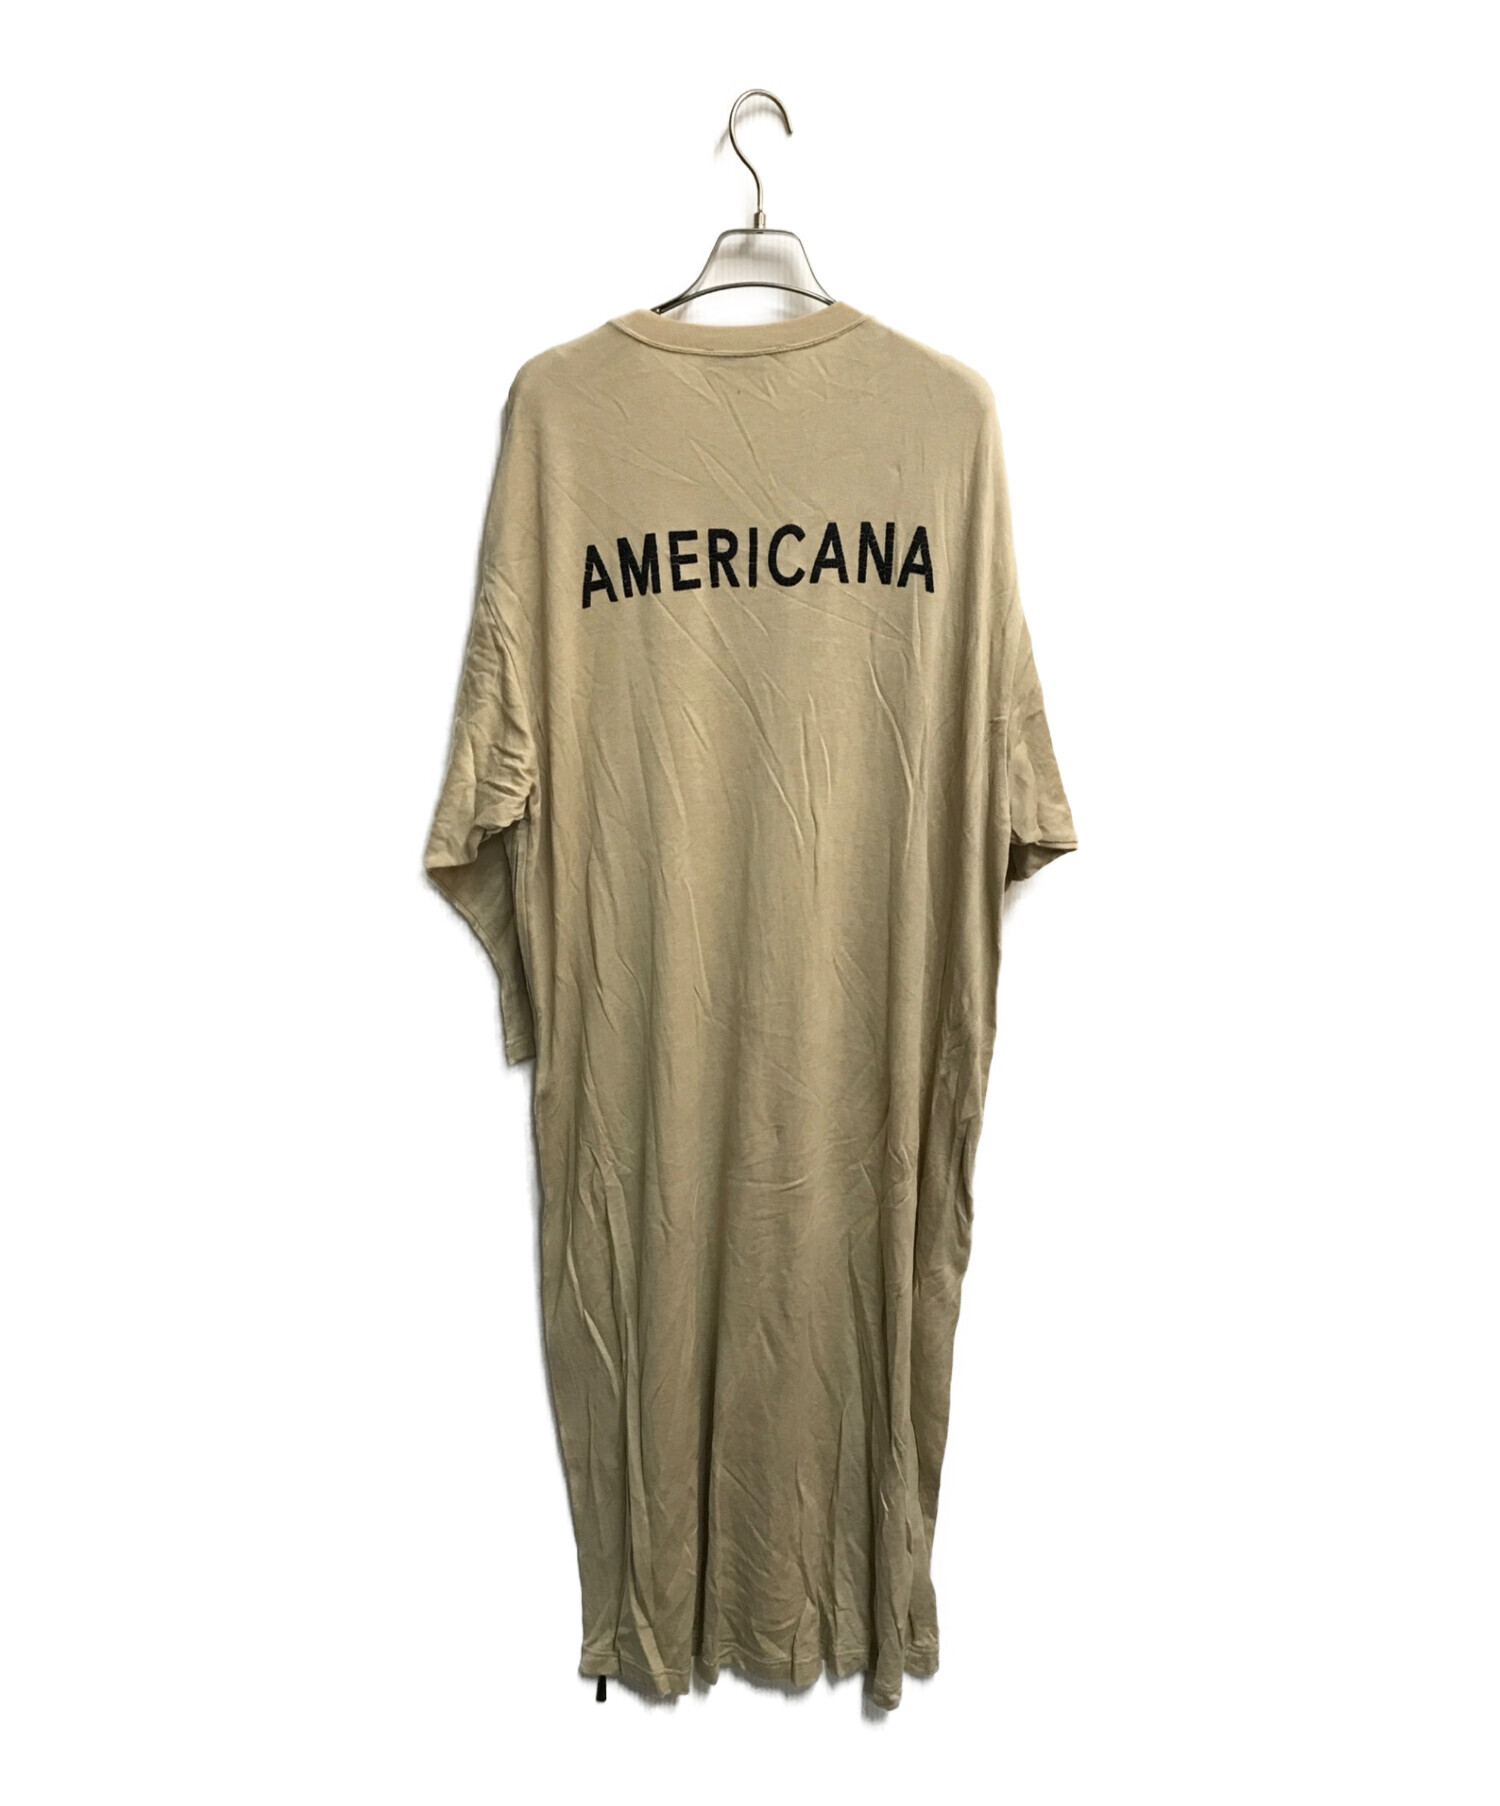 アメリカーナ Americana ワンピース フレア ロング 半袖 ロゴ 刺繍